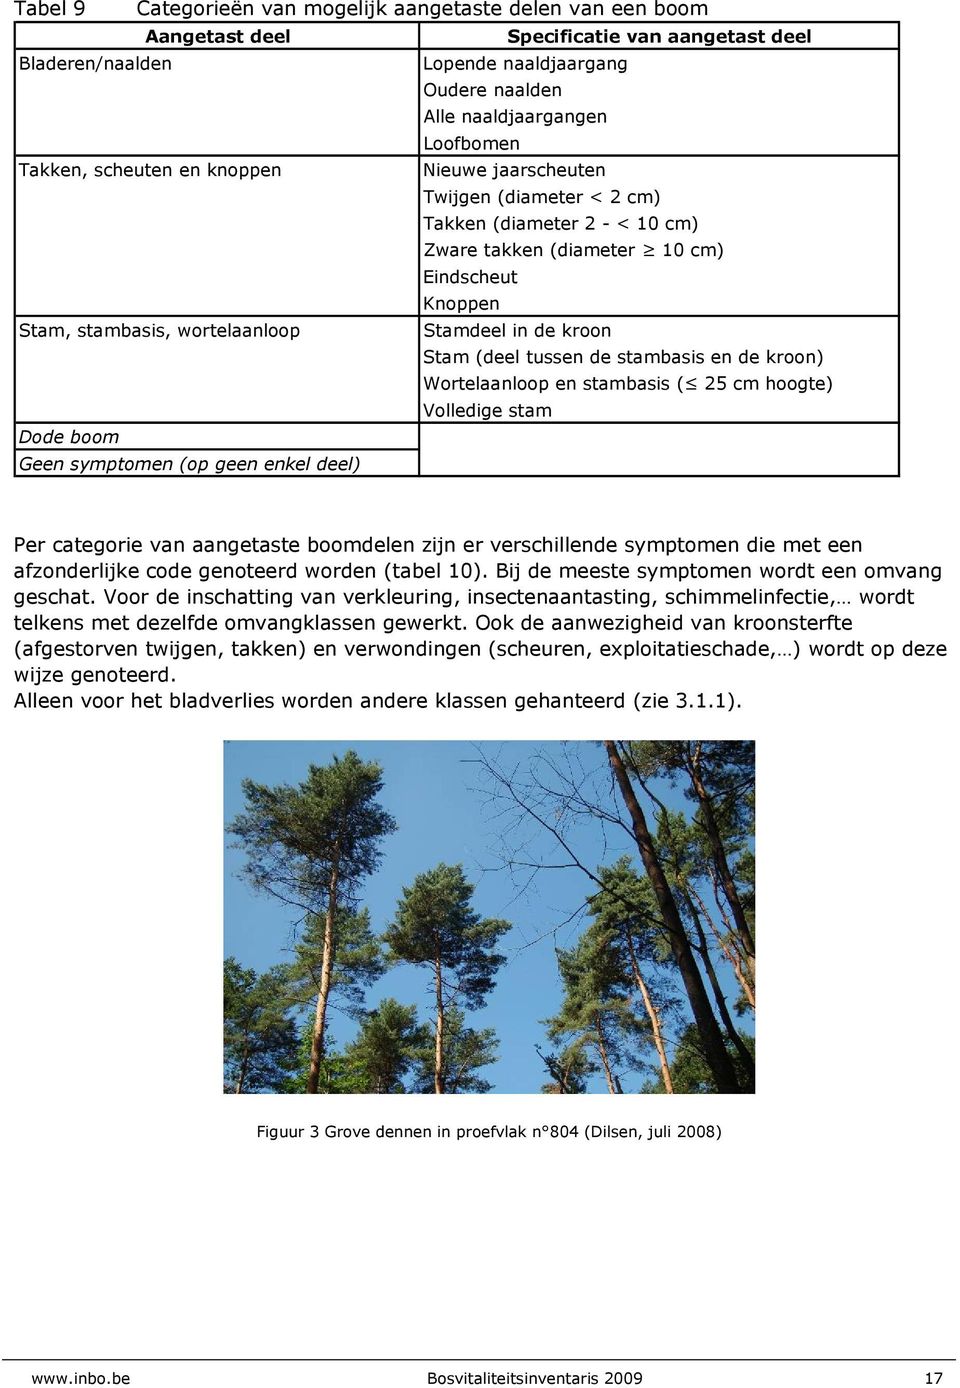 kroon Stam (deel tussen de stambasis en de kroon) Wortelaanloop en stambasis ( 25 cm hoogte) Volledige stam Dode boom Geen symptomen (op geen enkel deel) Per categorie van aangetaste boomdelen zijn